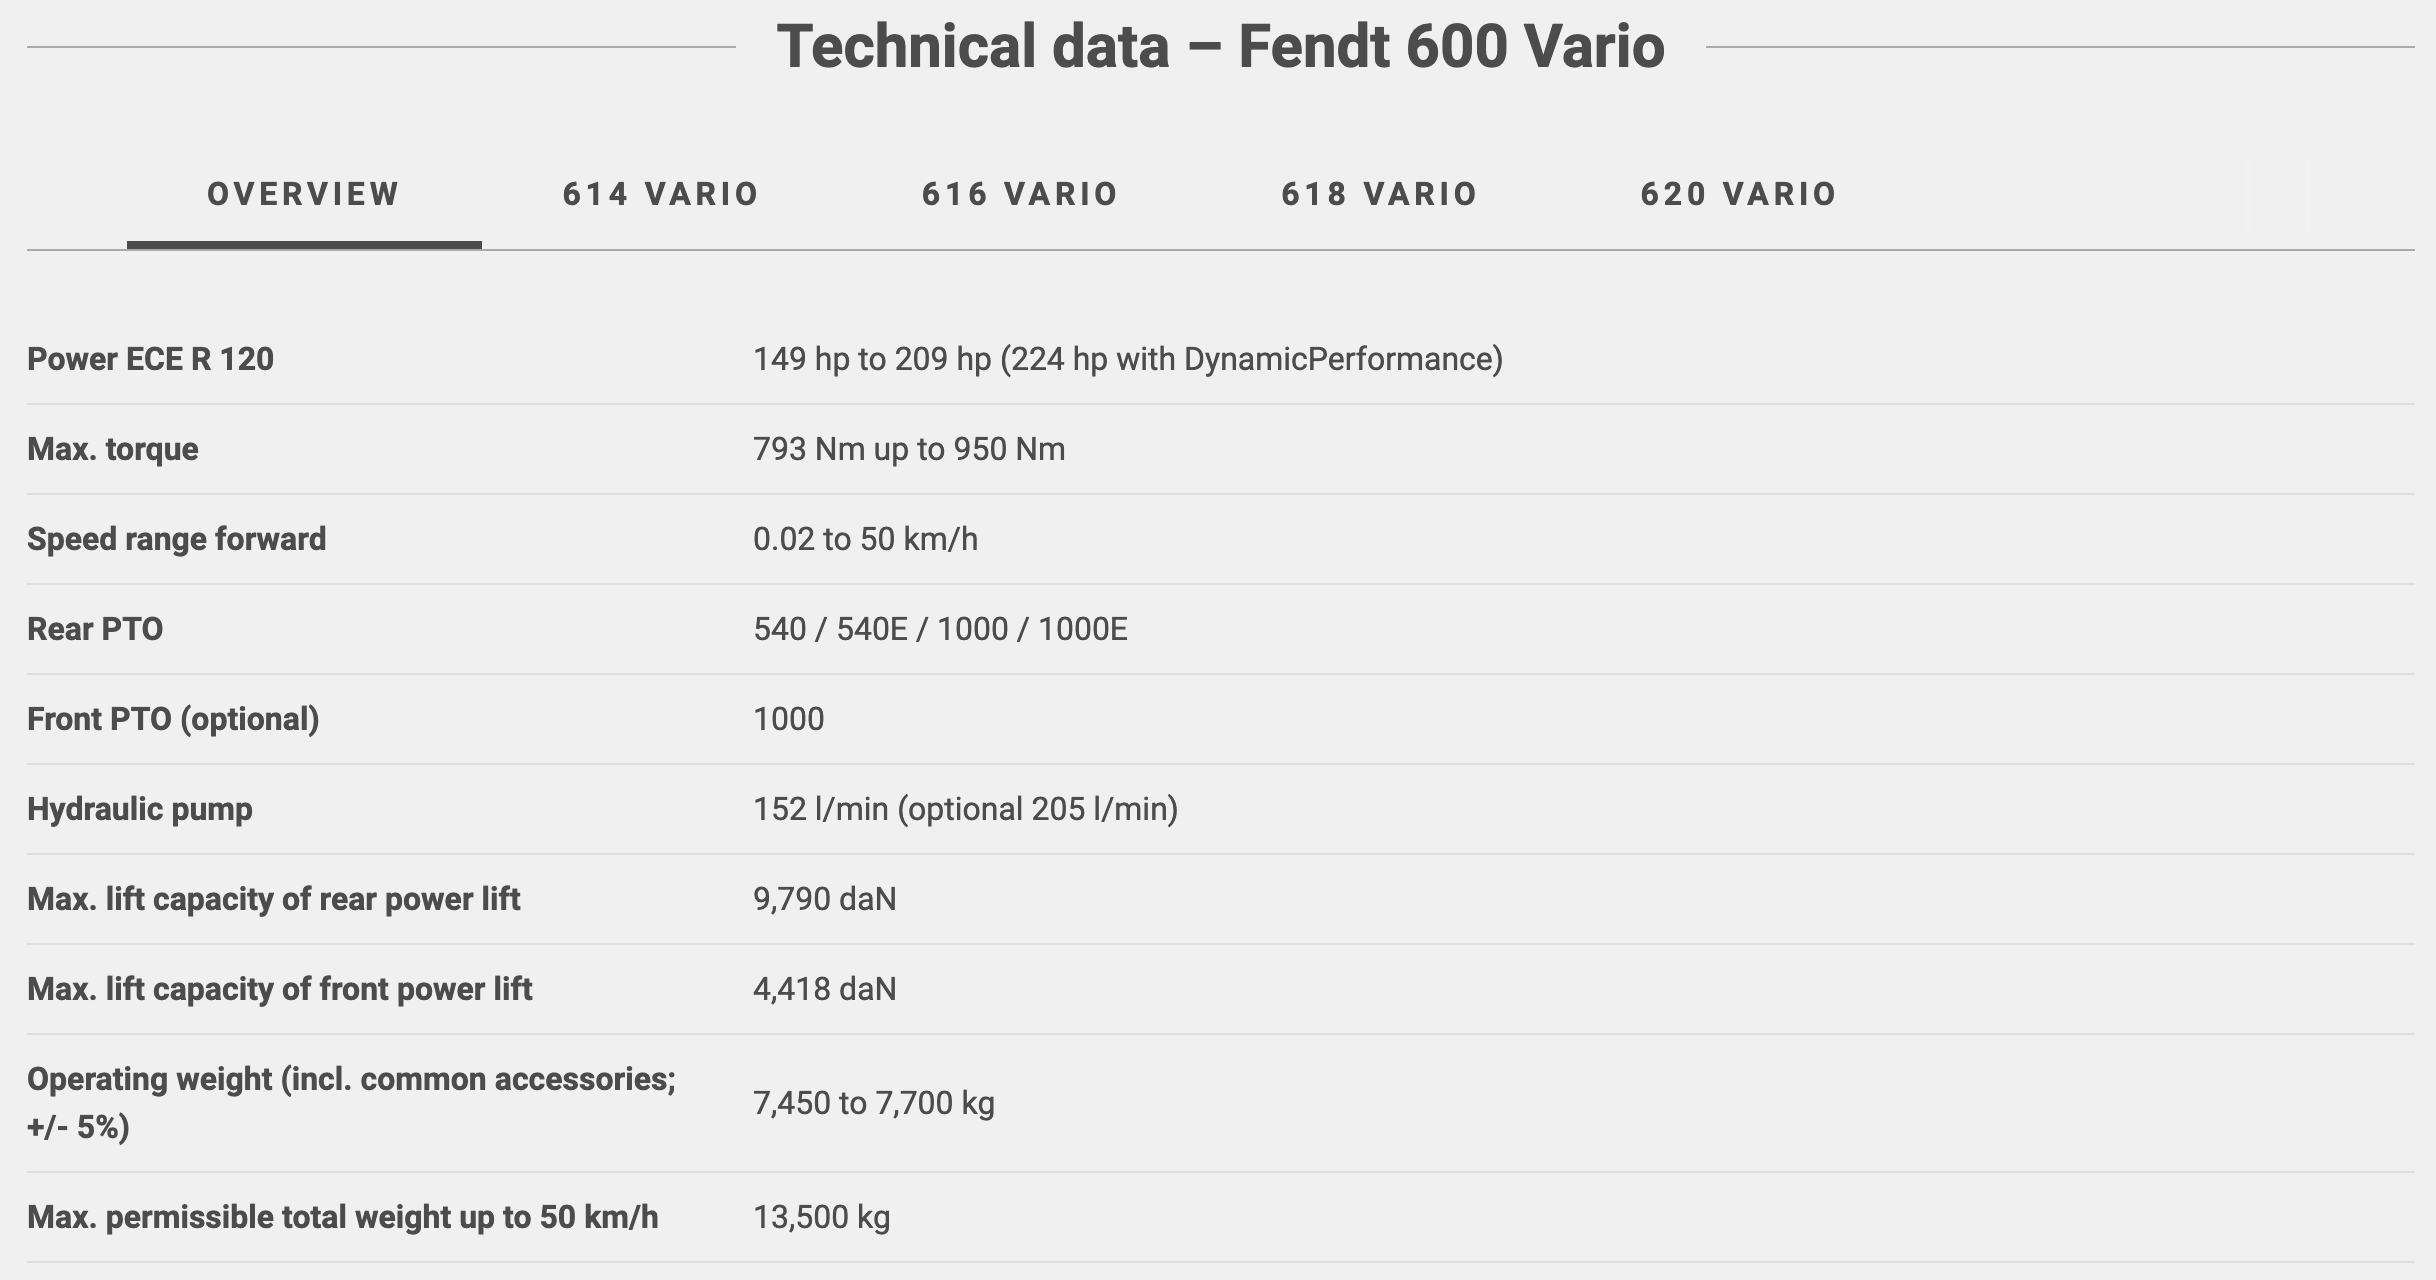 Dados técnicos gerais do Fendt 600 Vario